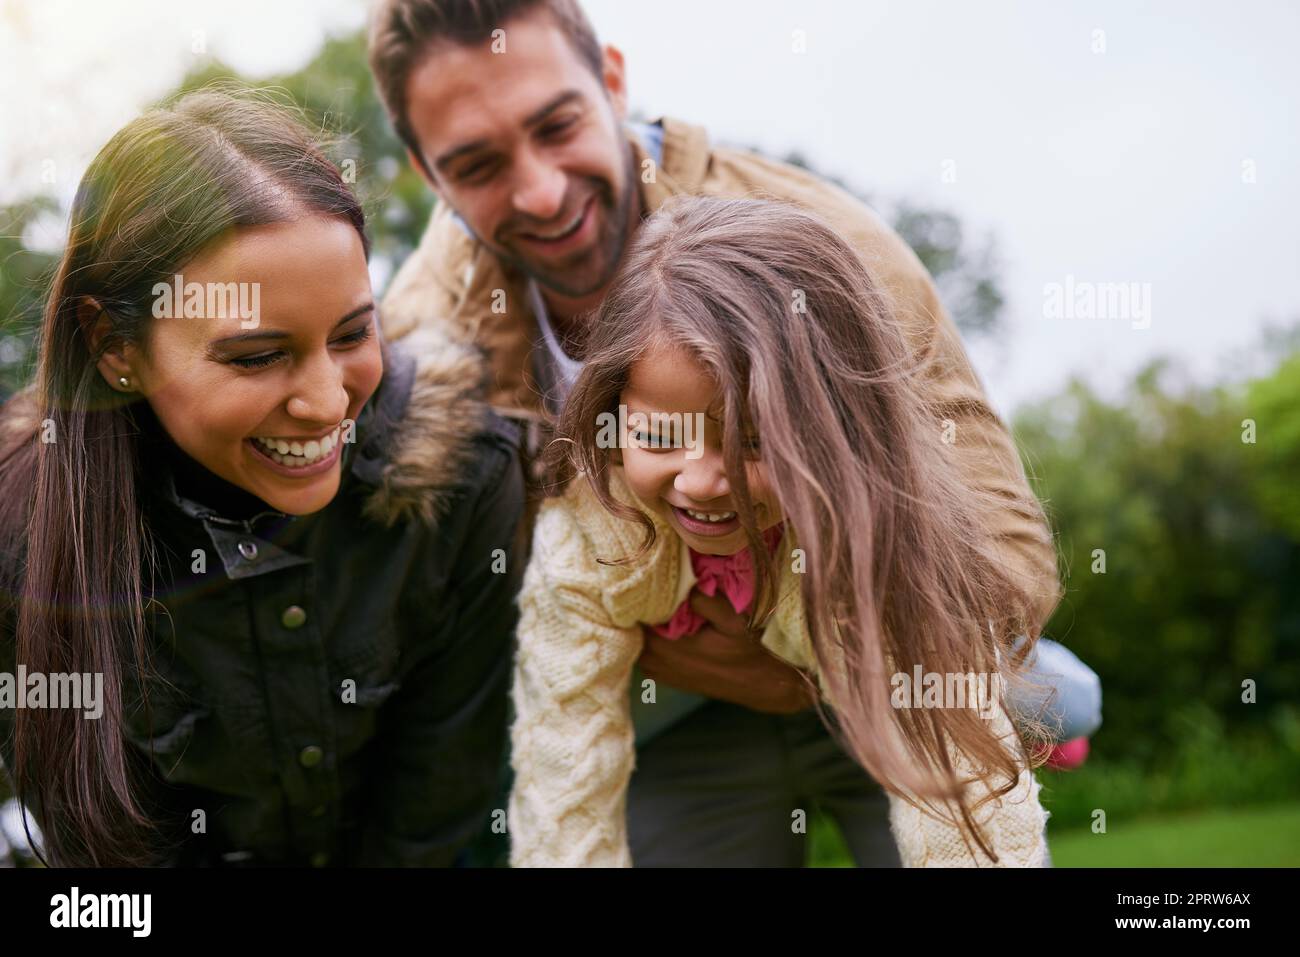 Kinder sind ein Geschenk. Eine junge Familie von drei Kindern genießt einen Tag im Park. Stockfoto